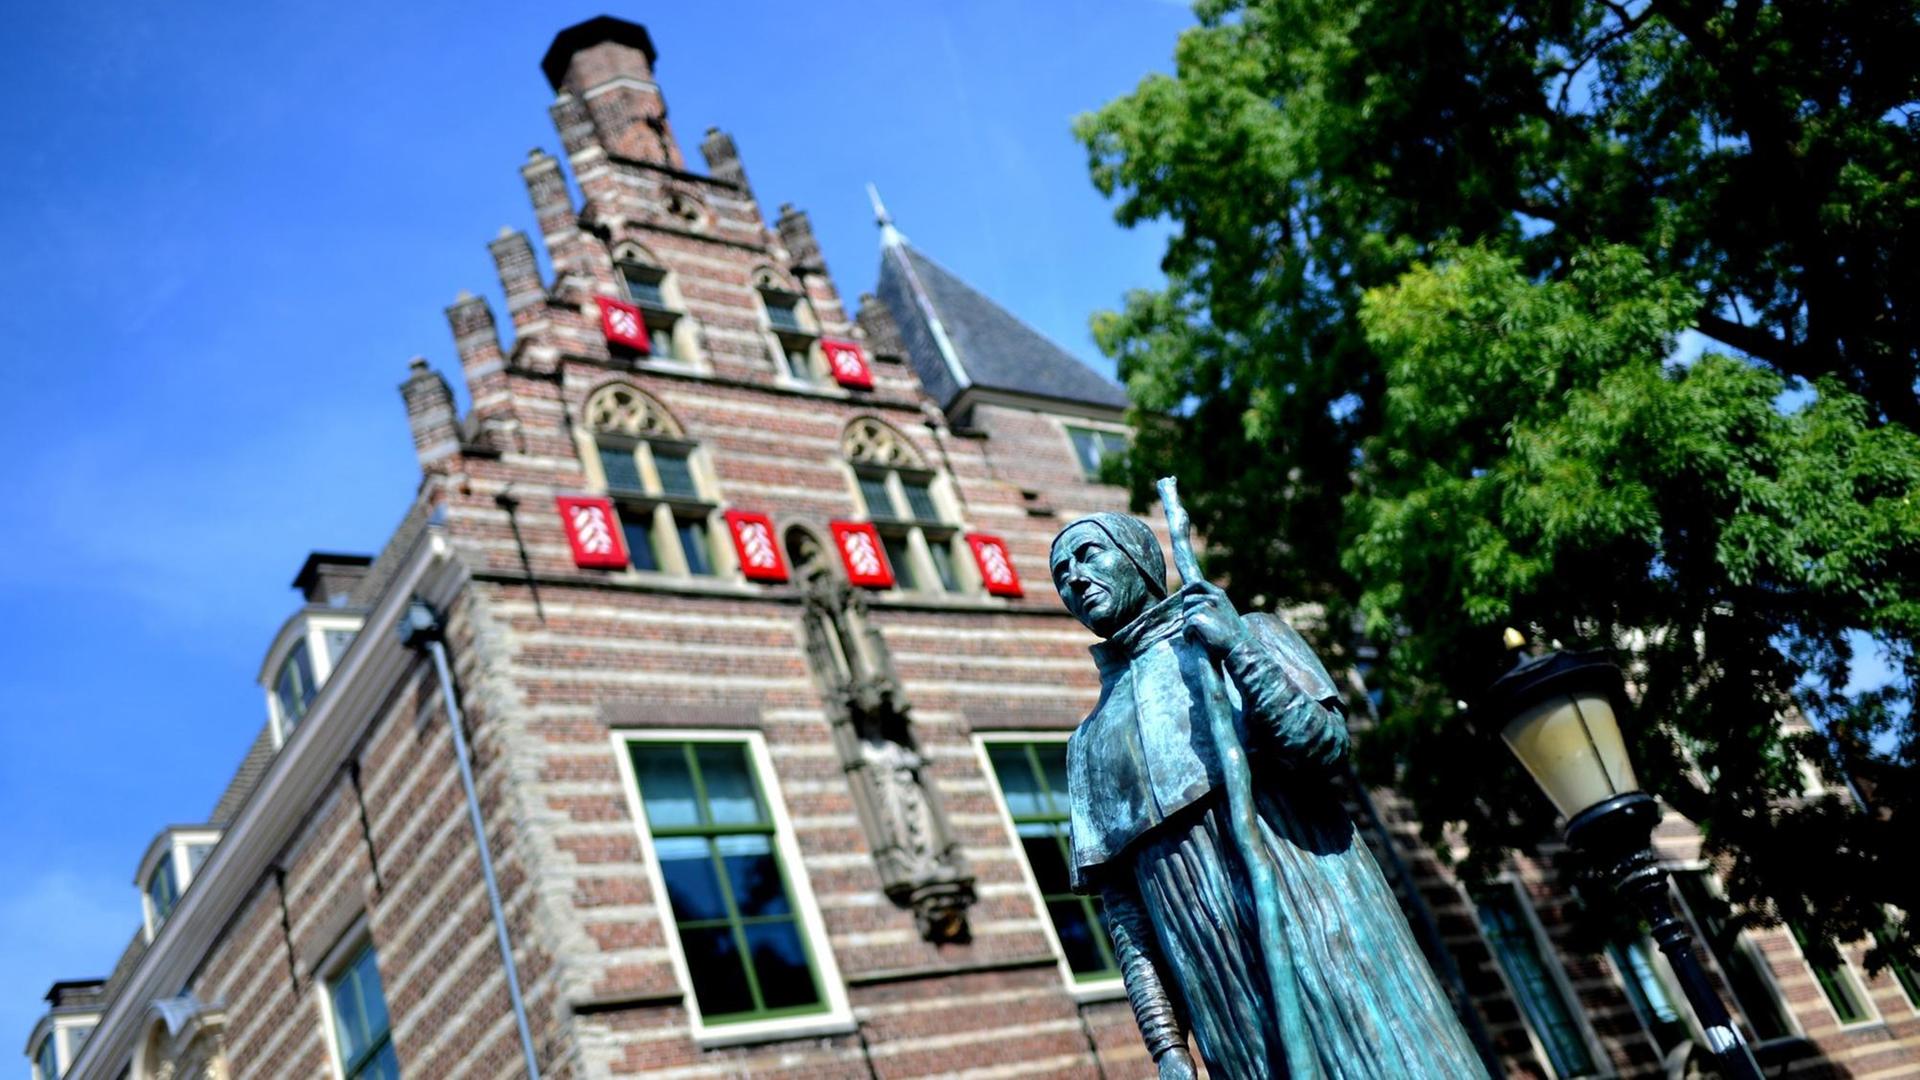 30.08.2019, Niederlande, Utrecht: Eine Skulptur von Papst Hadrian VI. steht vor dem Paushuize im Zentrum der Stadt. Das Gebäude wurde ab 1517 von Adriaan Floriszoon Boeyens, dem einzigen niederländischen Papst, erbaut und gilt als wichtiges Monumentalgebäude der Stadt.